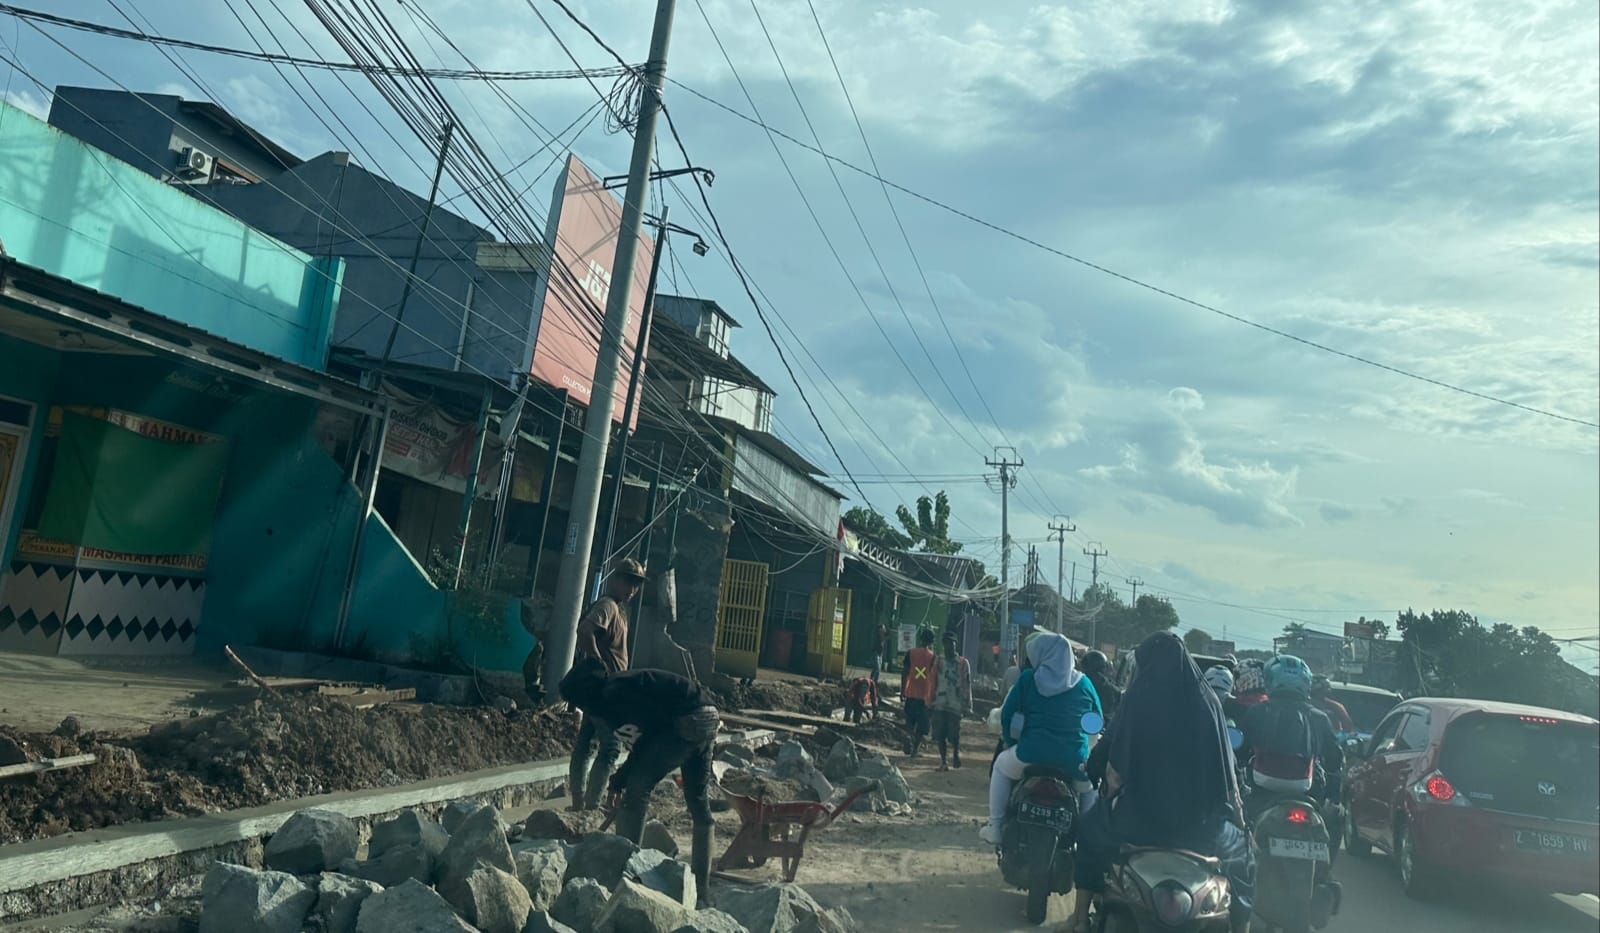 Pemda Provinsi Jabar Diminta Segera Selesai Proyek Jalan Ma'mun Nawawi di Bekasi